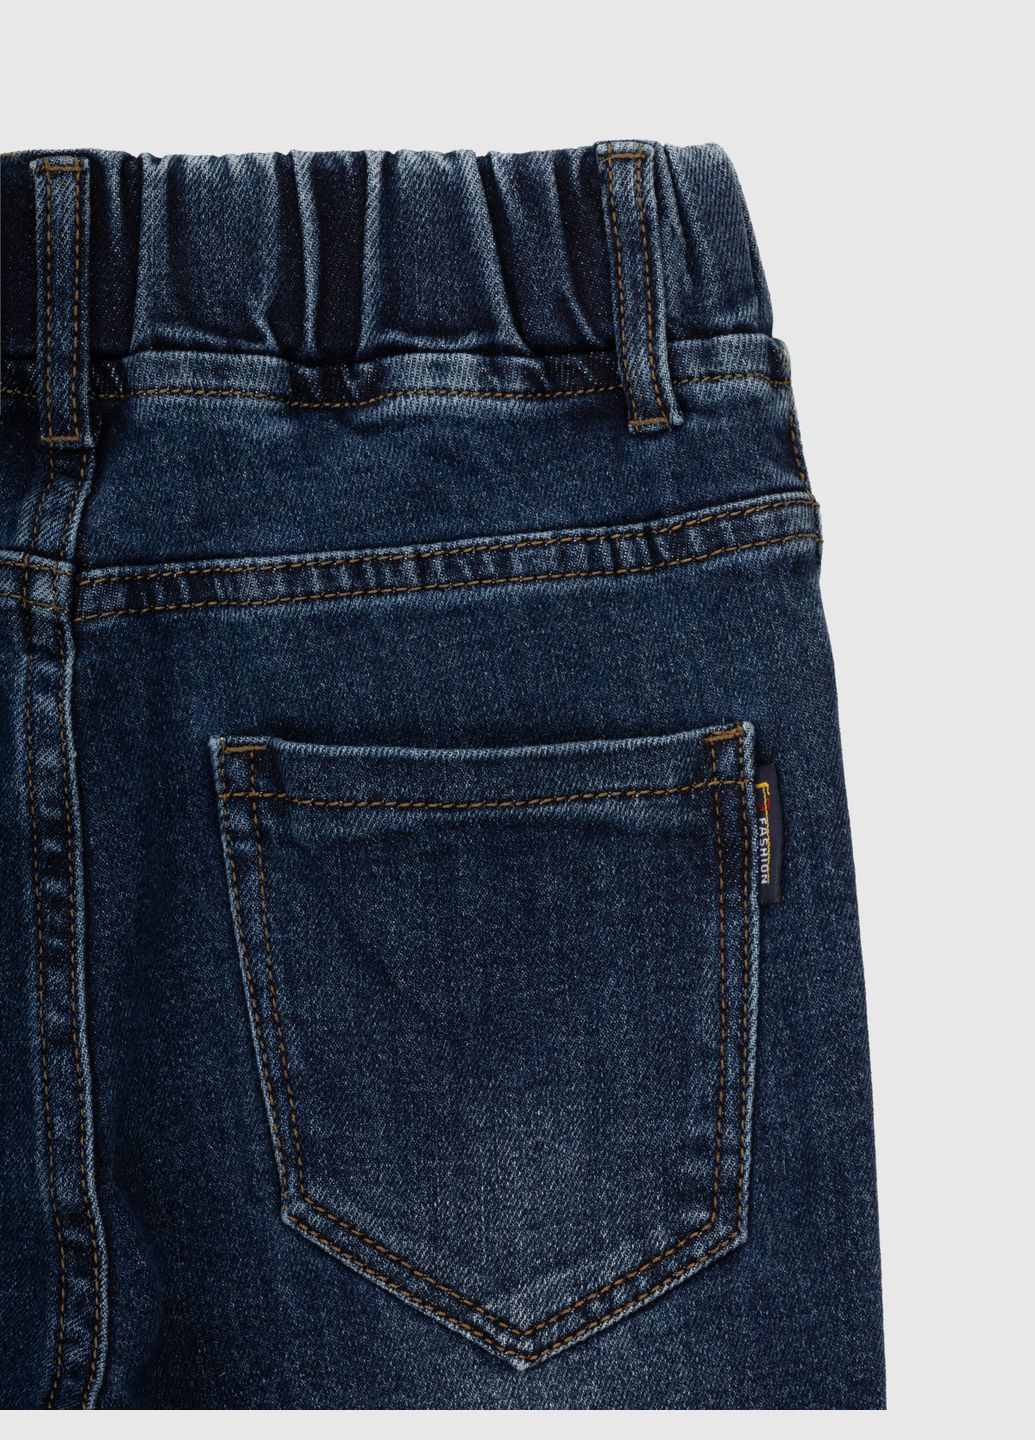 Синие демисезонные джинсы Moyaberla